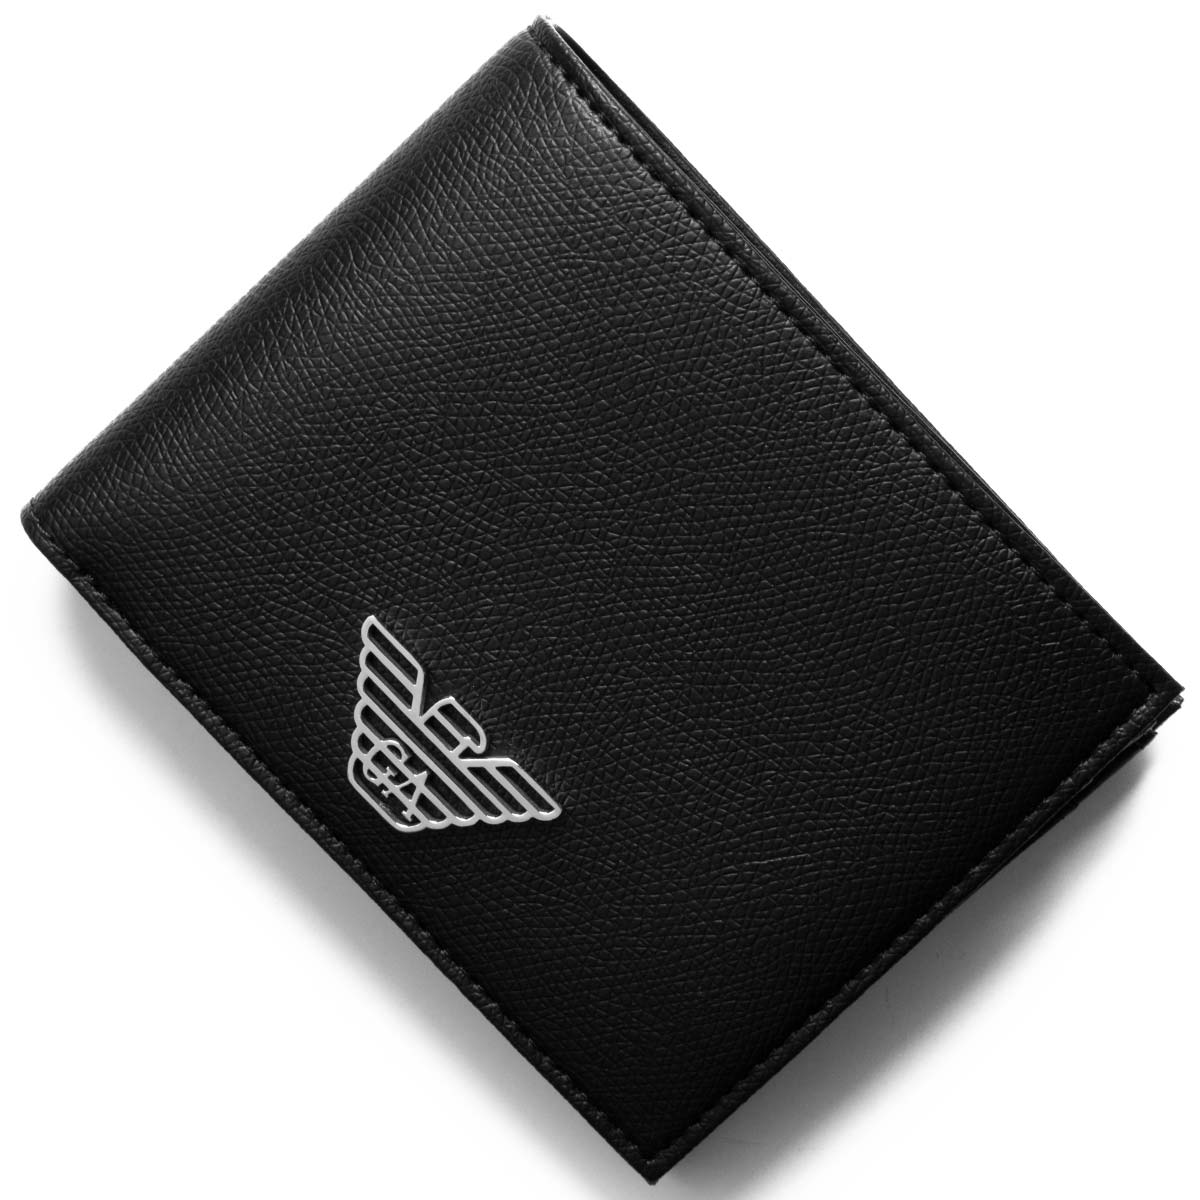 『ARMANI』 / アルマーニ 黒 二つ折り レザー 財布 札入れ ロゴ 新品